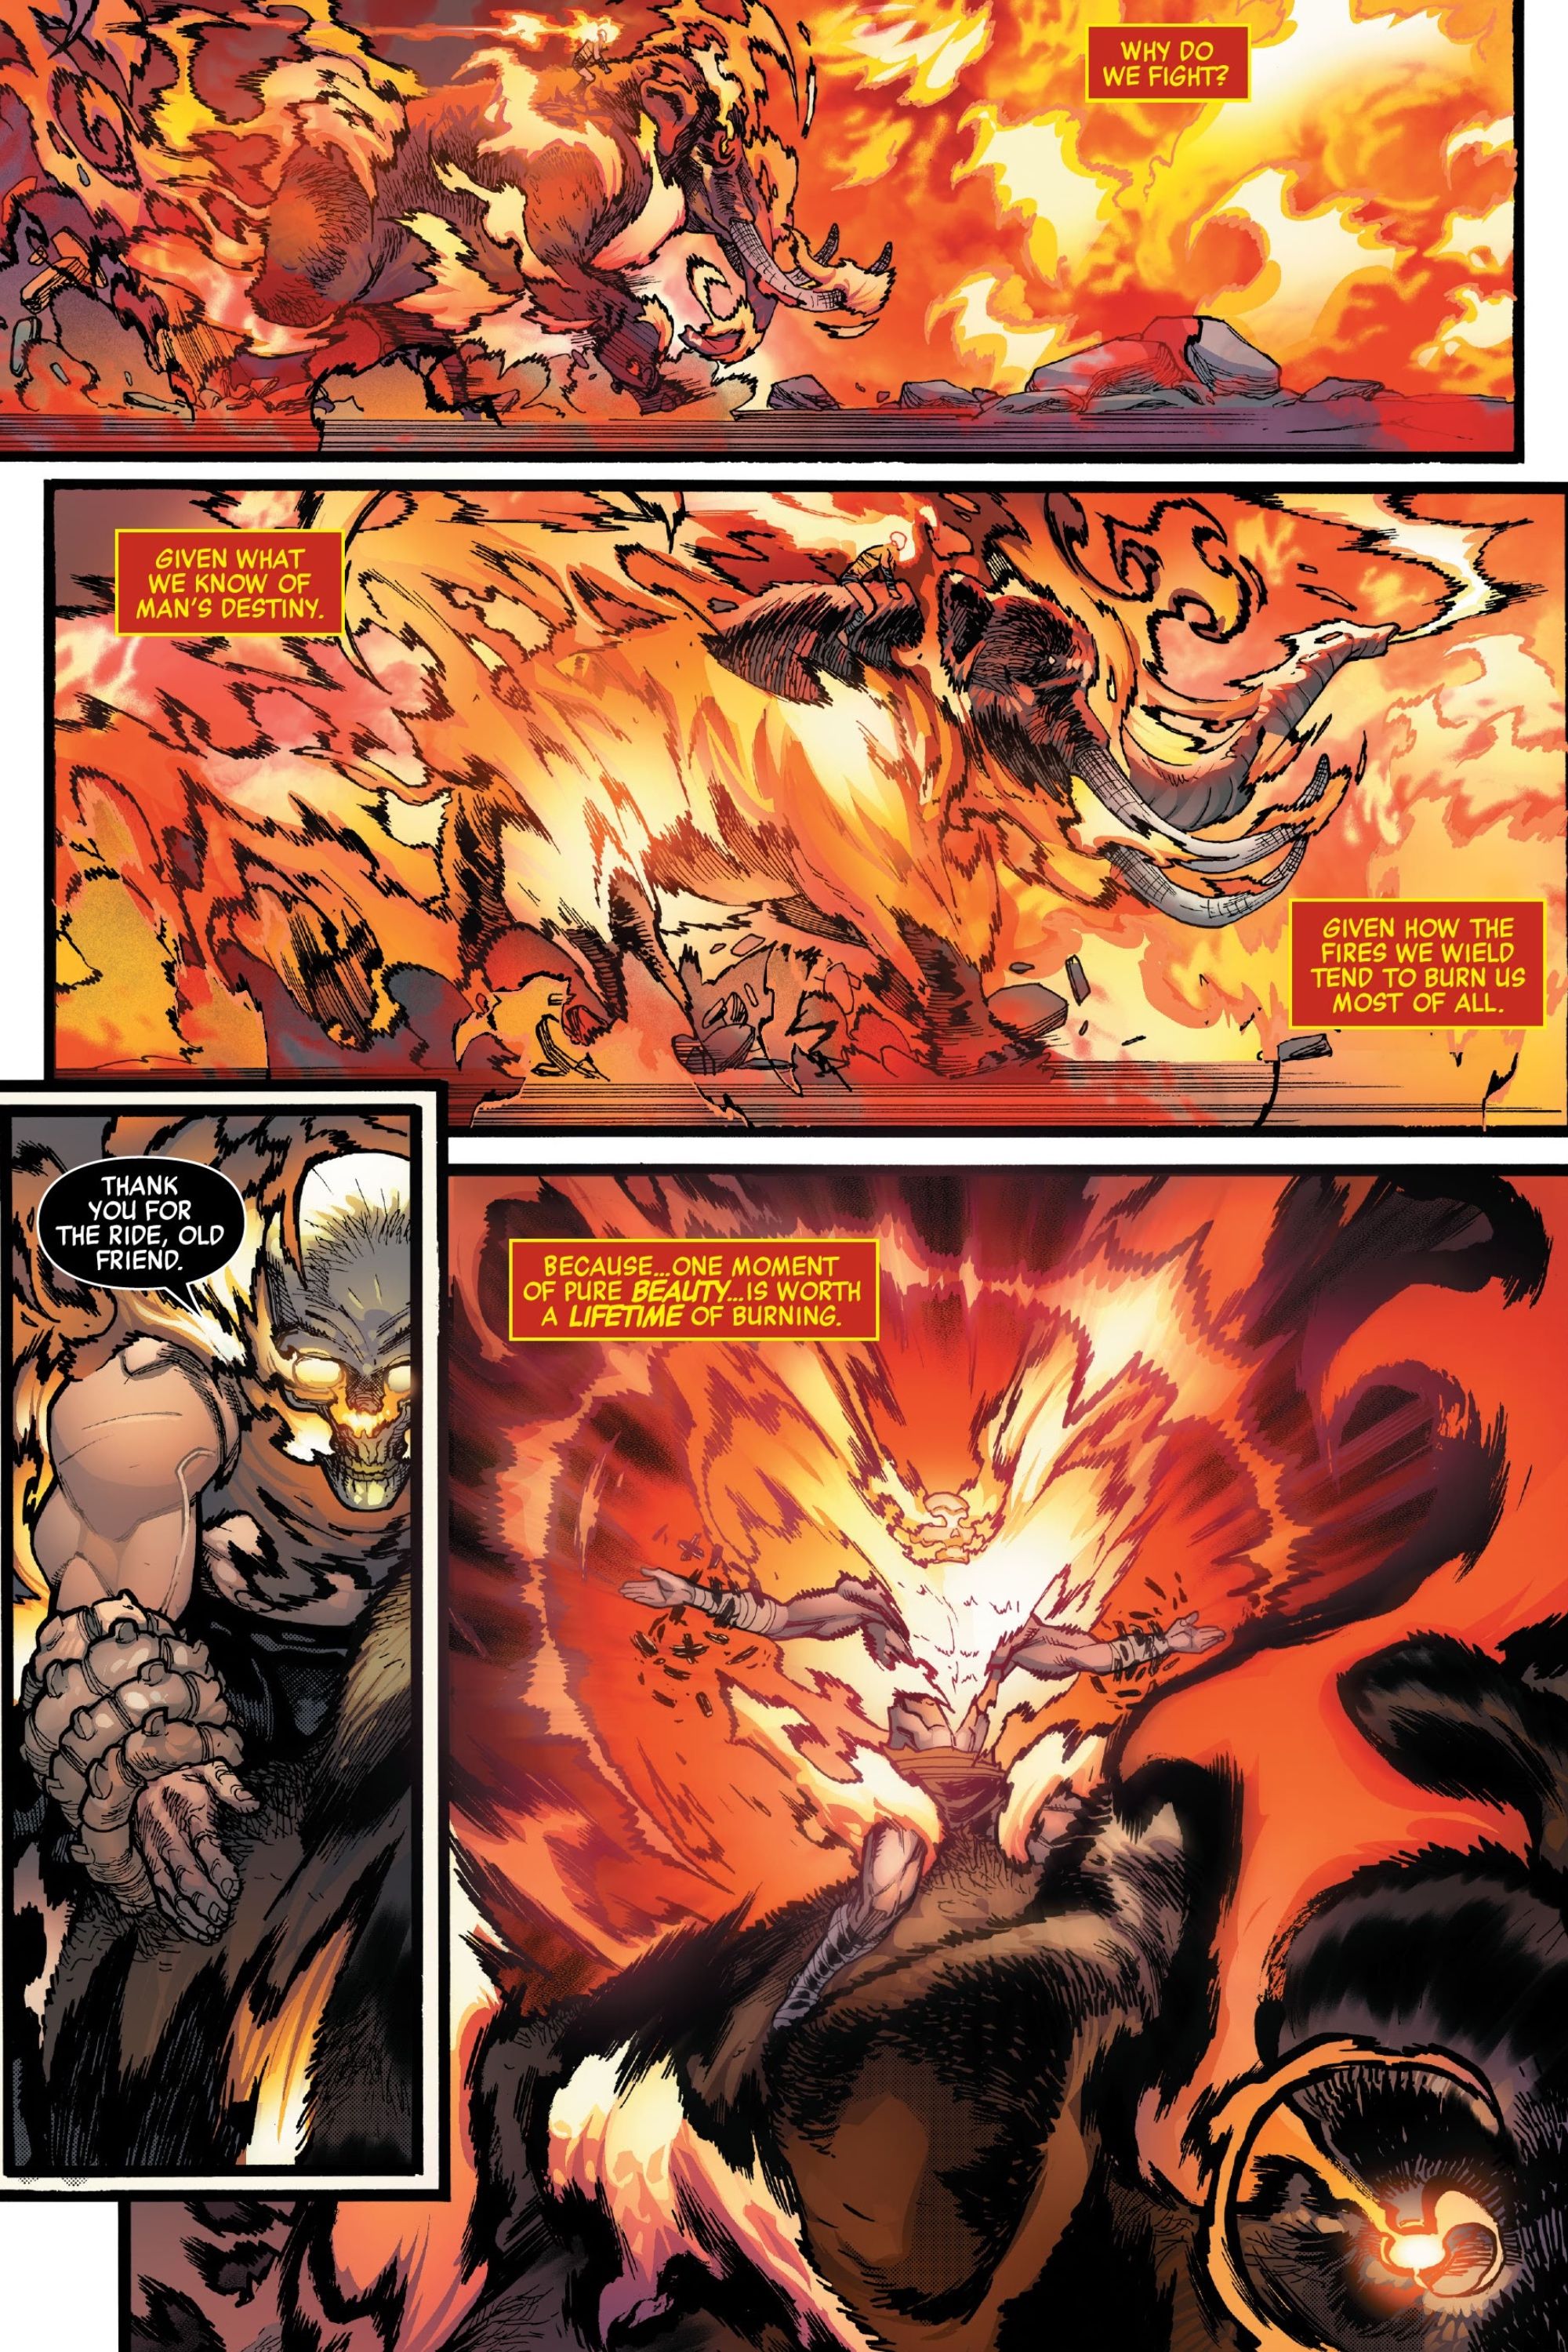 Universo Marvel 616: Preview da nova revista do Motoqueiro Fantasma